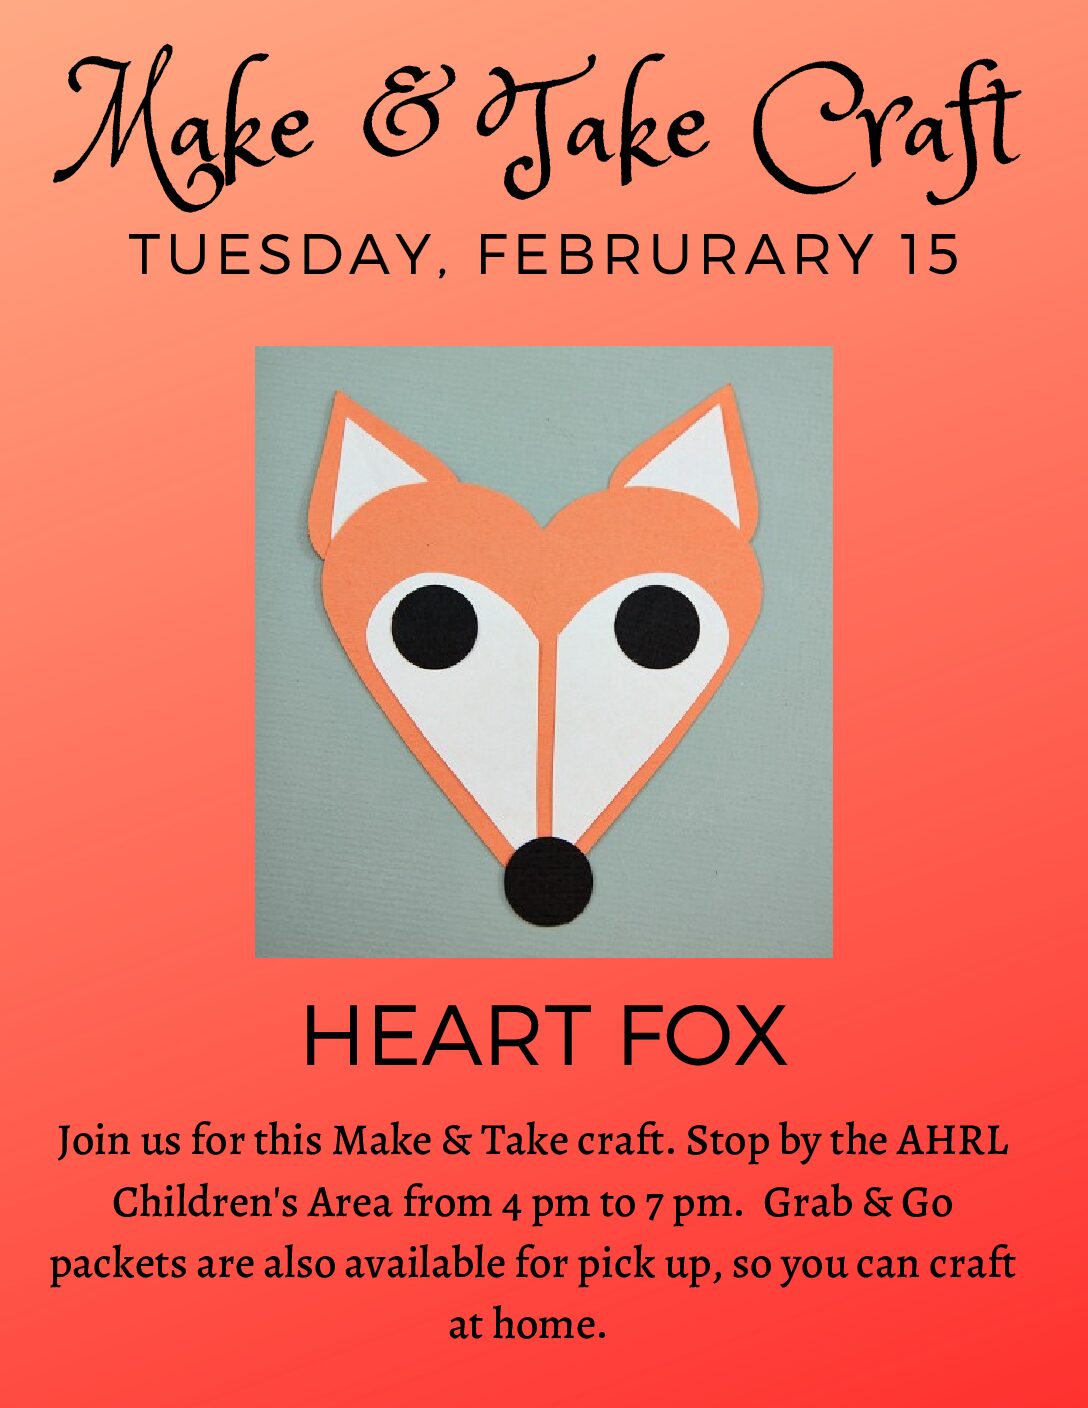 Make & Take--Tuesday, Februrary 15